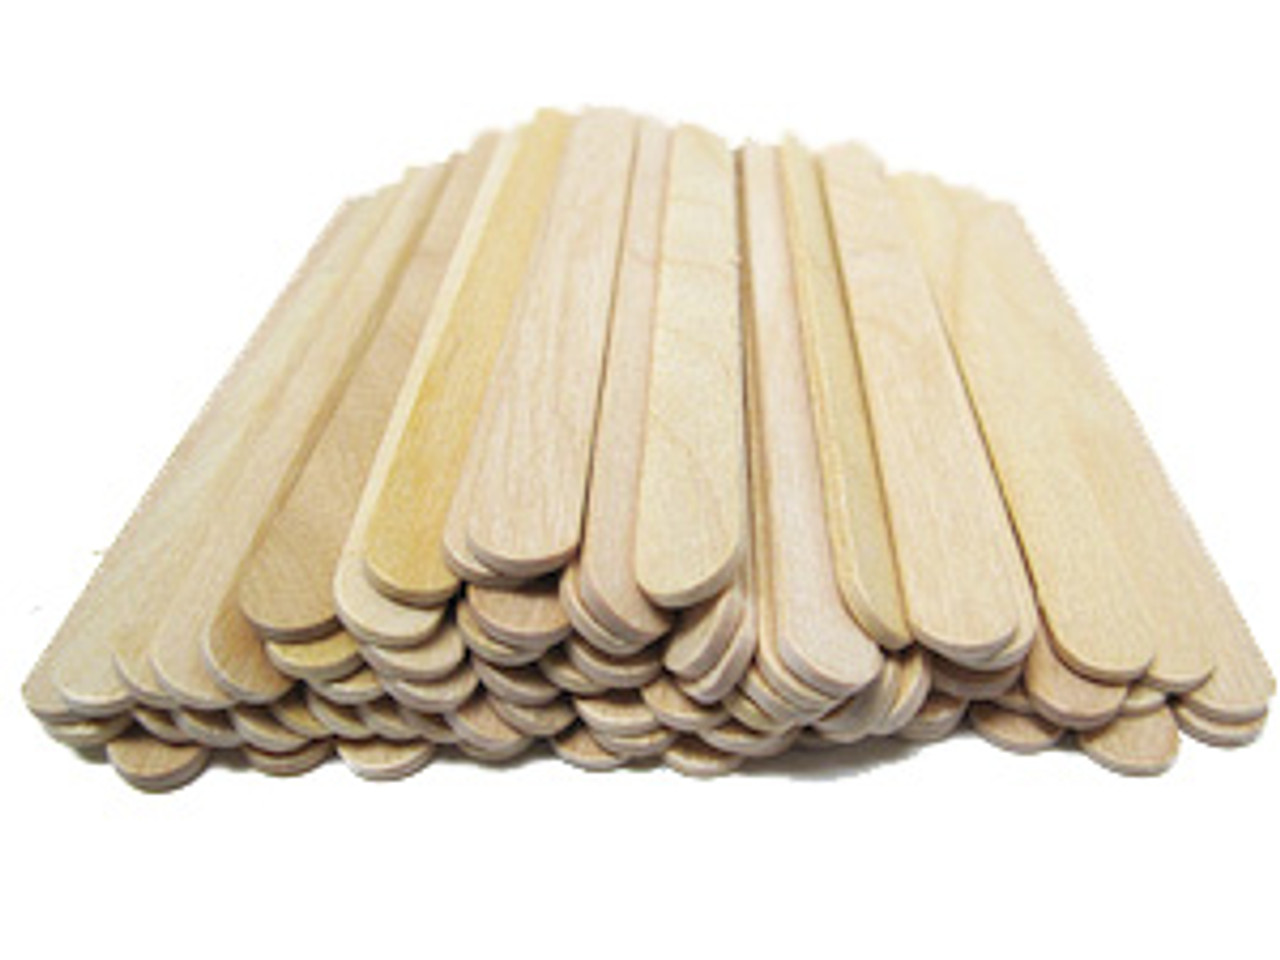 96 Wholesale Wooden Craft Sticks